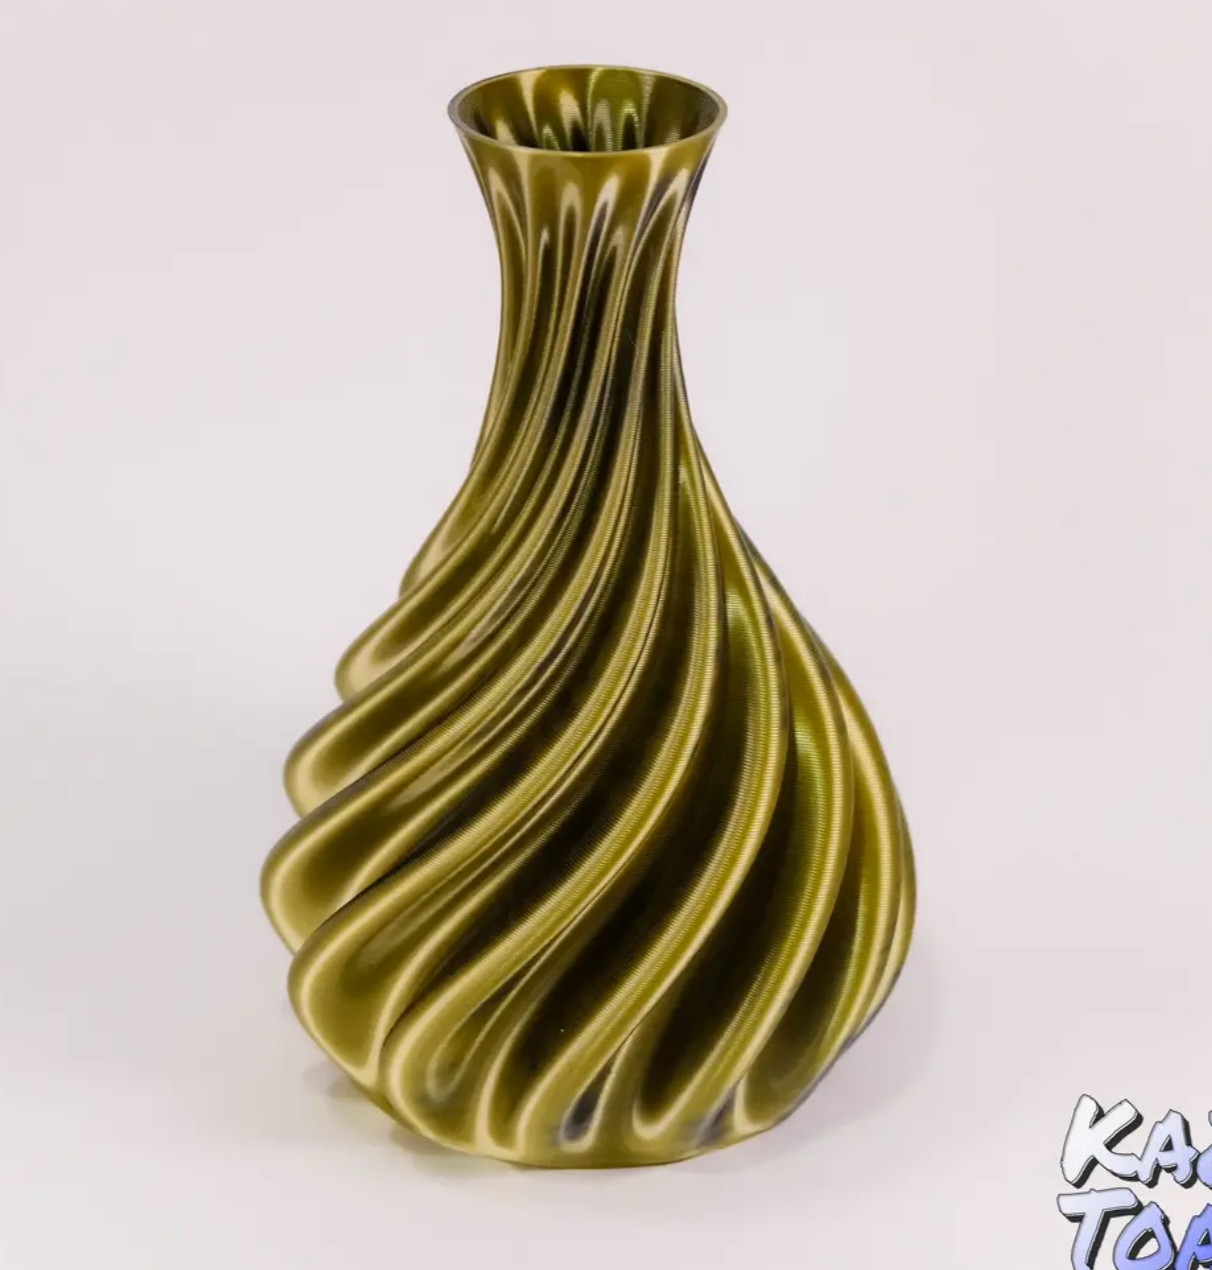 3D-printed Spiral Vase